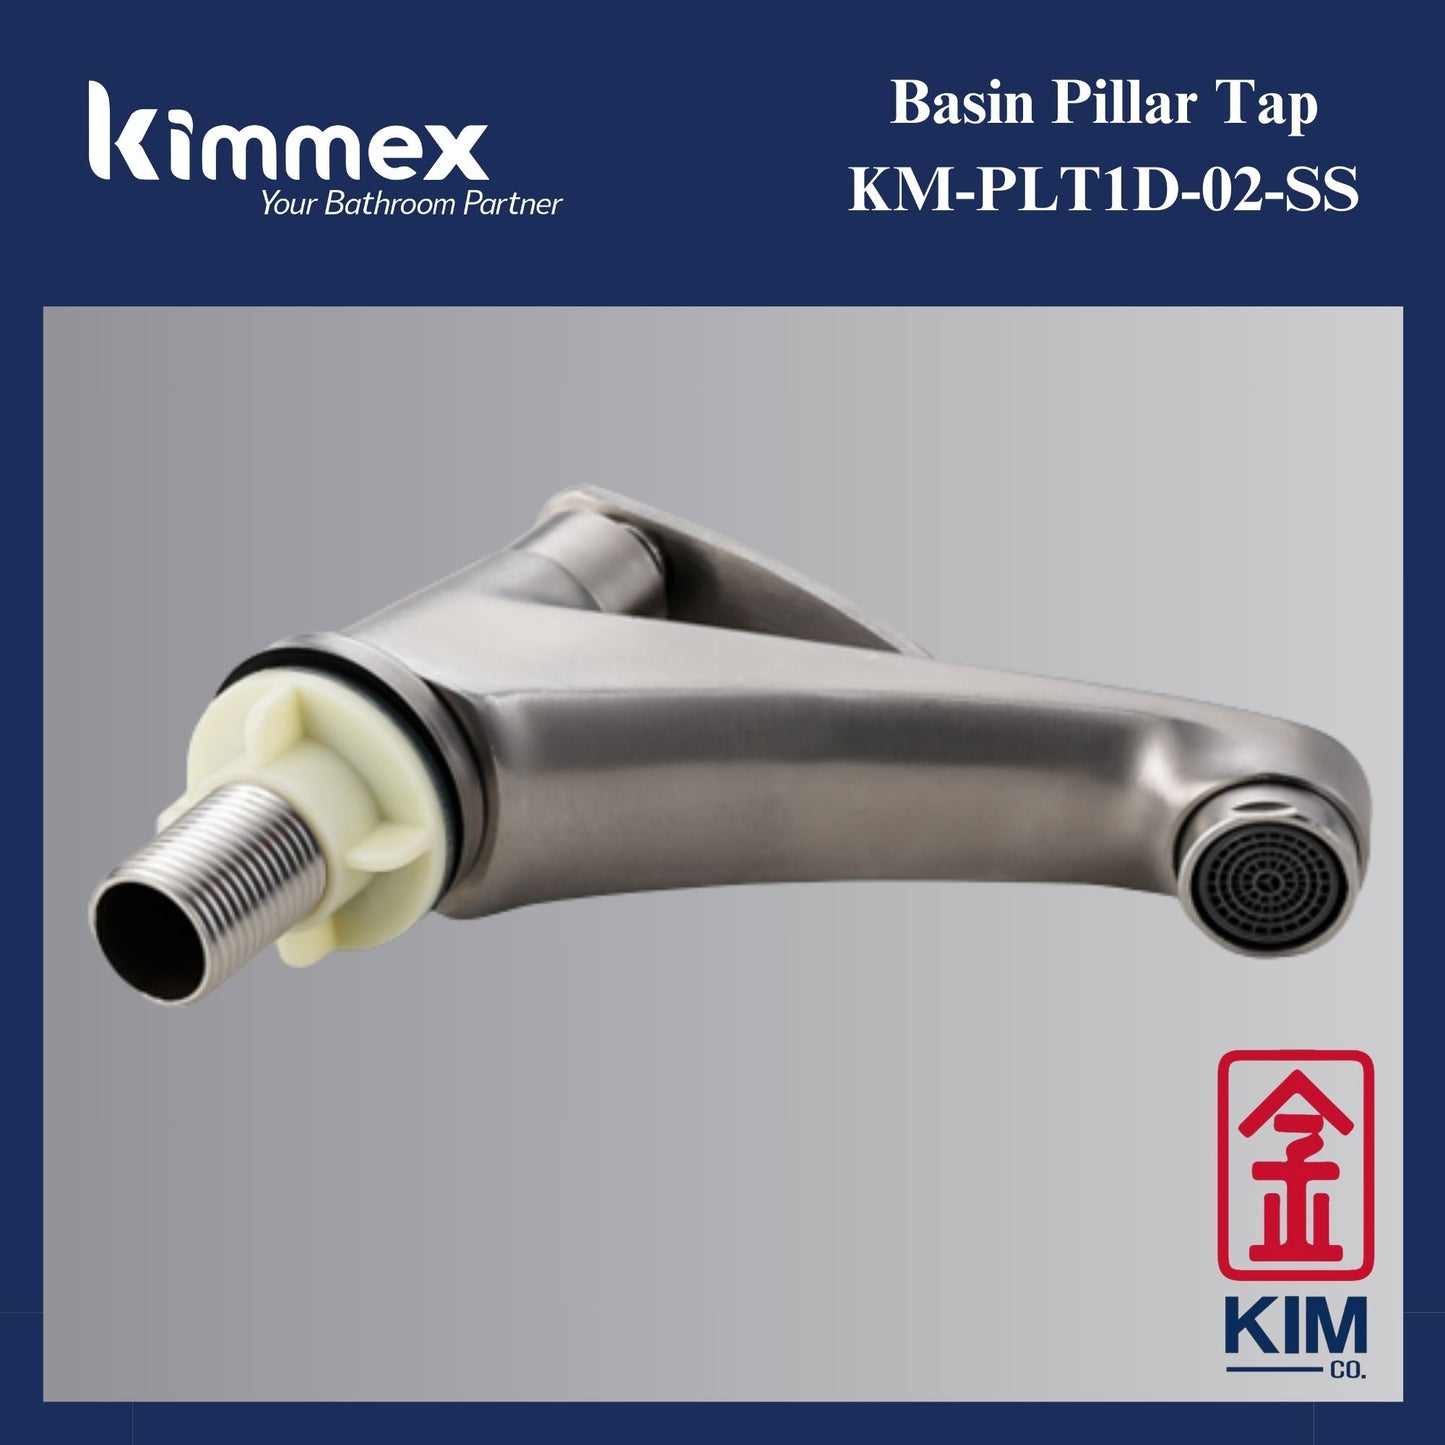 kimmex Basin Pillar Tap (KM-PLT1D-02-SS)